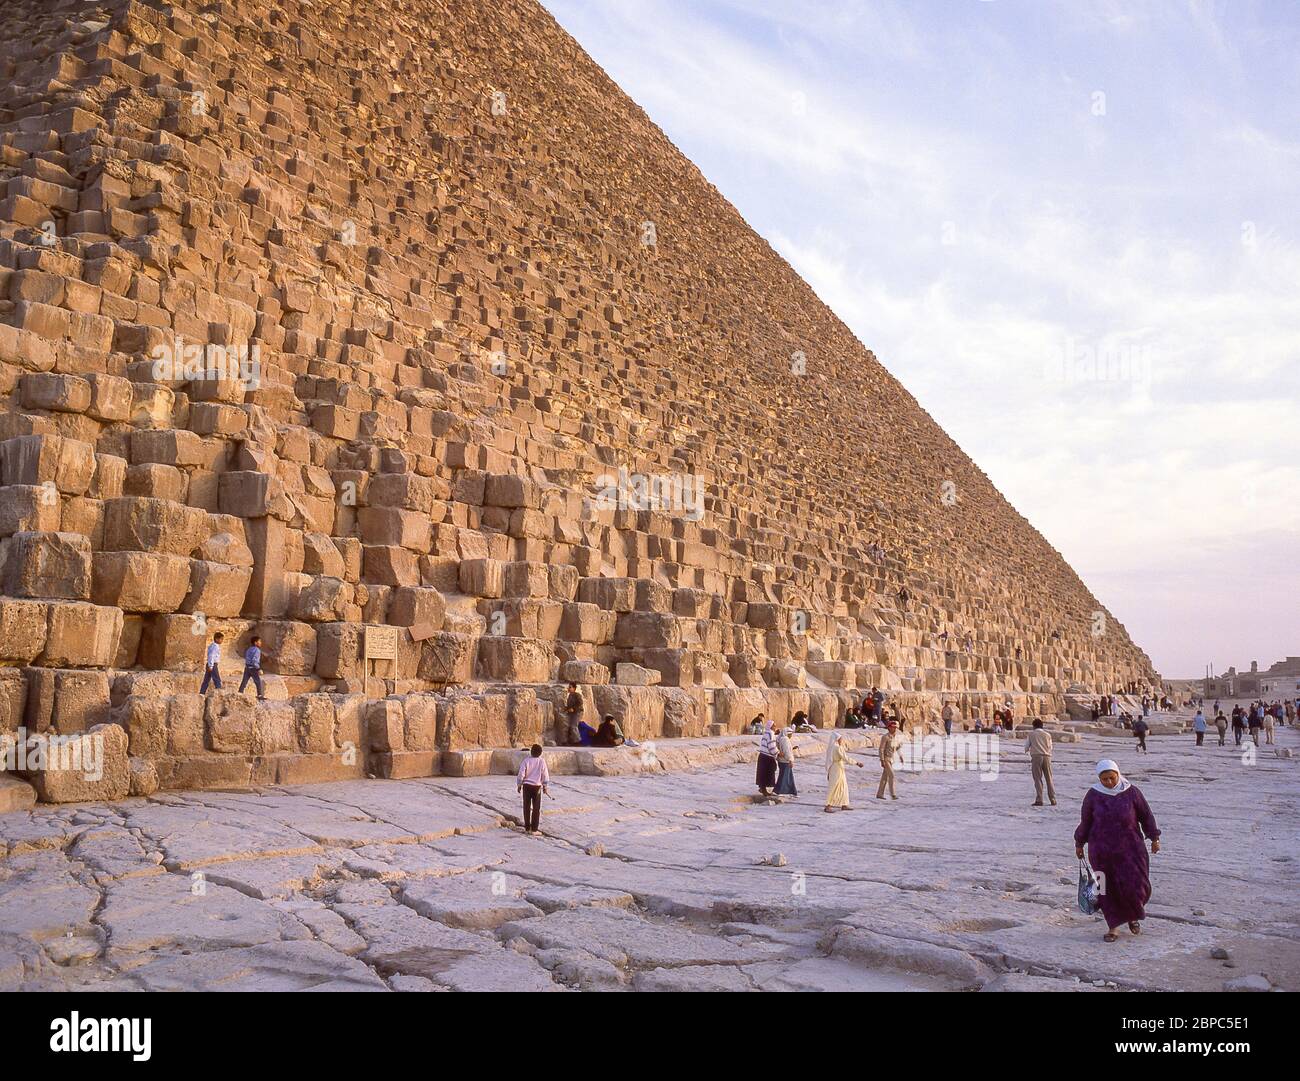 La Grande Pyramide de Gizeh, Gizeh, Govergate de Gizeh, République d'Égypte Banque D'Images